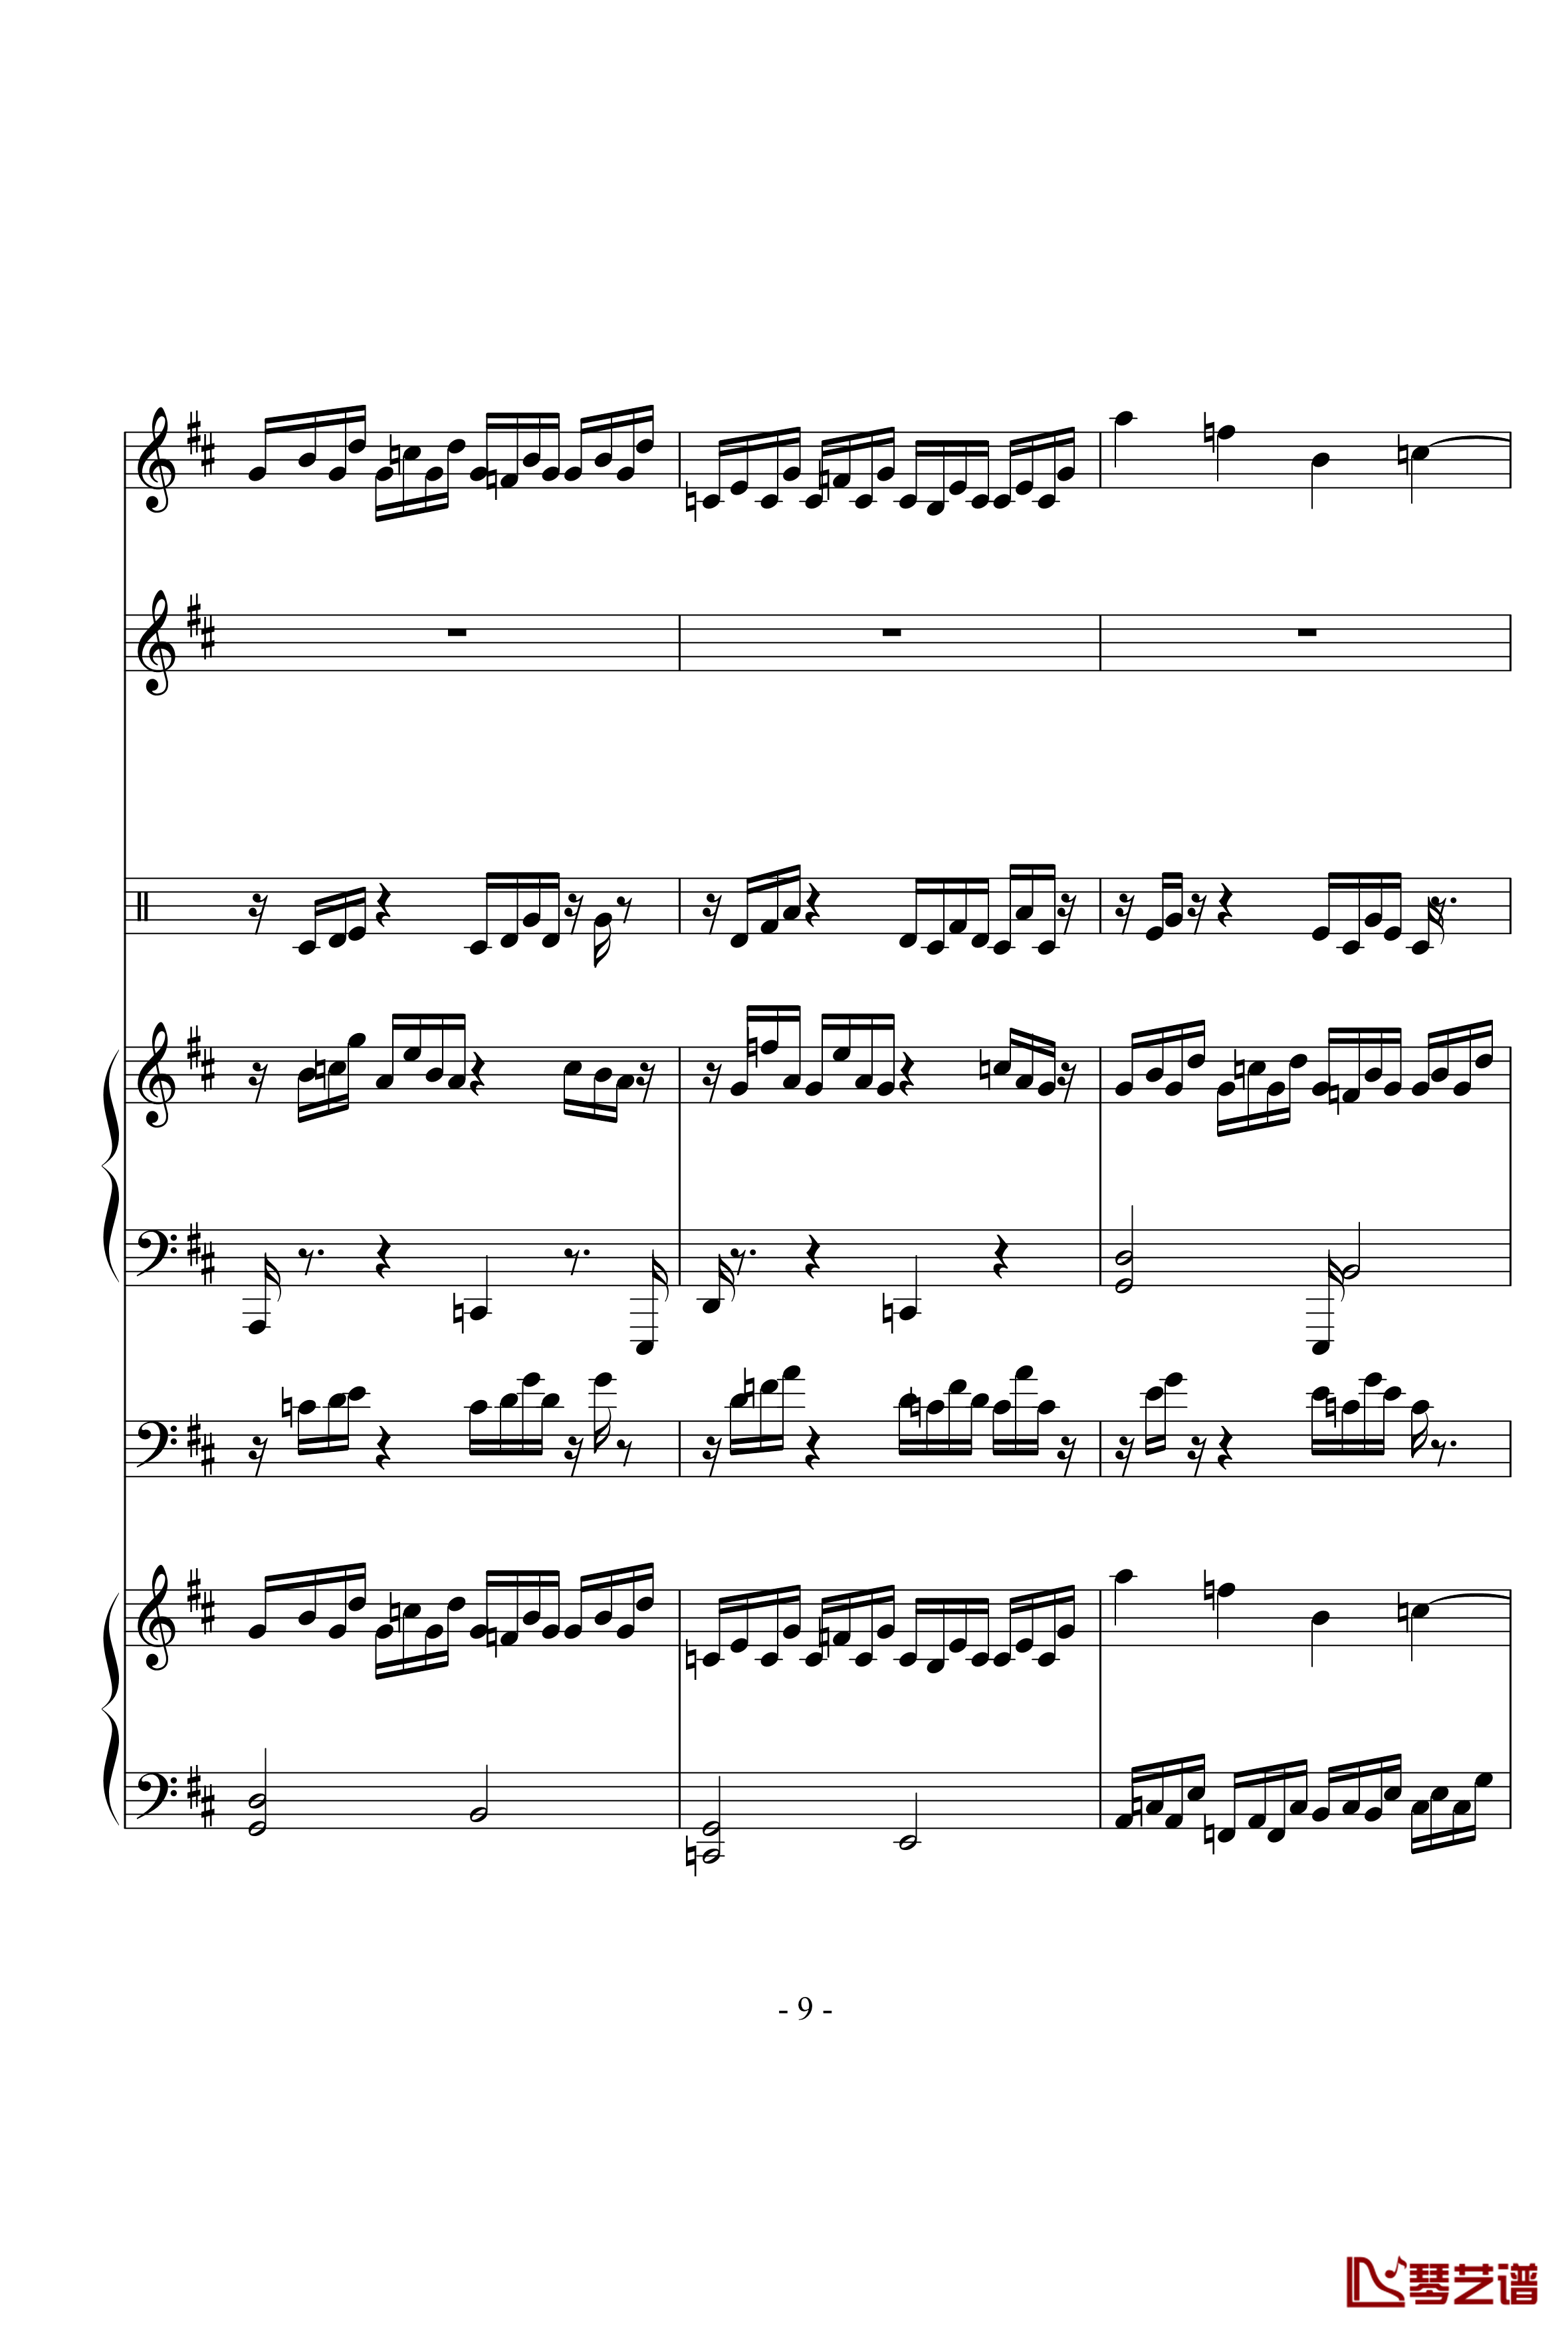 何夕和弦钢琴谱-21条音轨音乐-高天海（Skysea)9